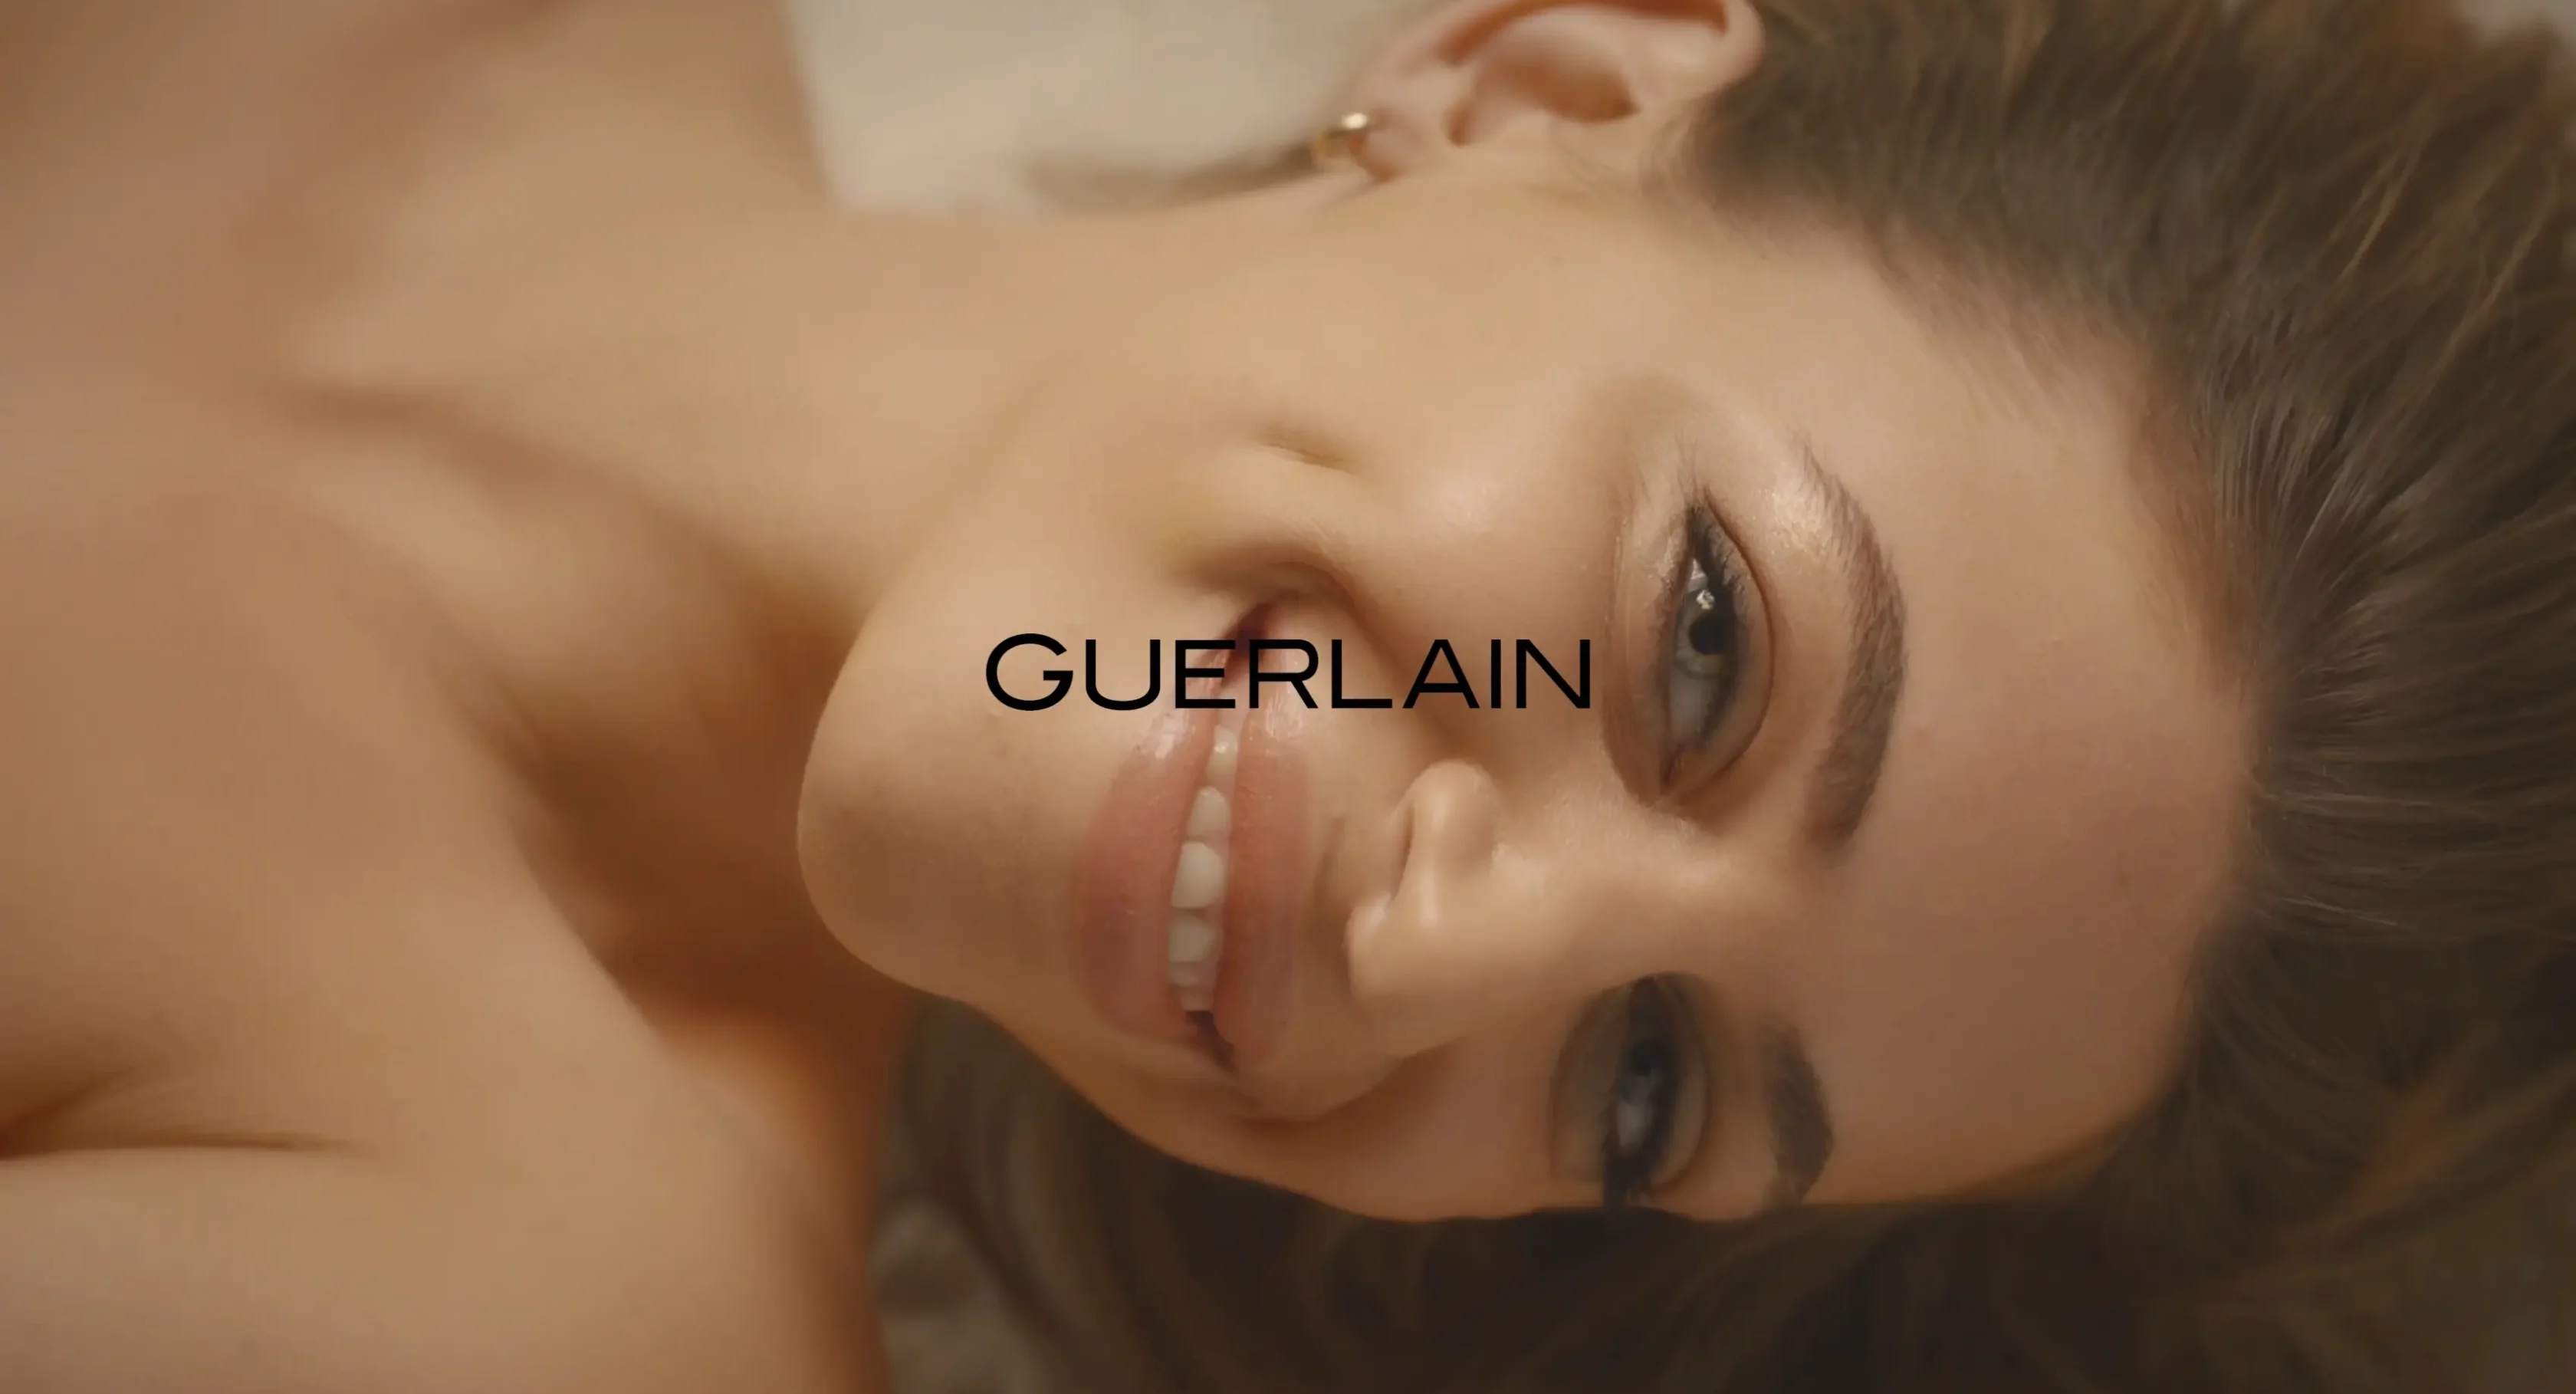 Guerlain - Featuring Nitsan Raiter on Vimeo